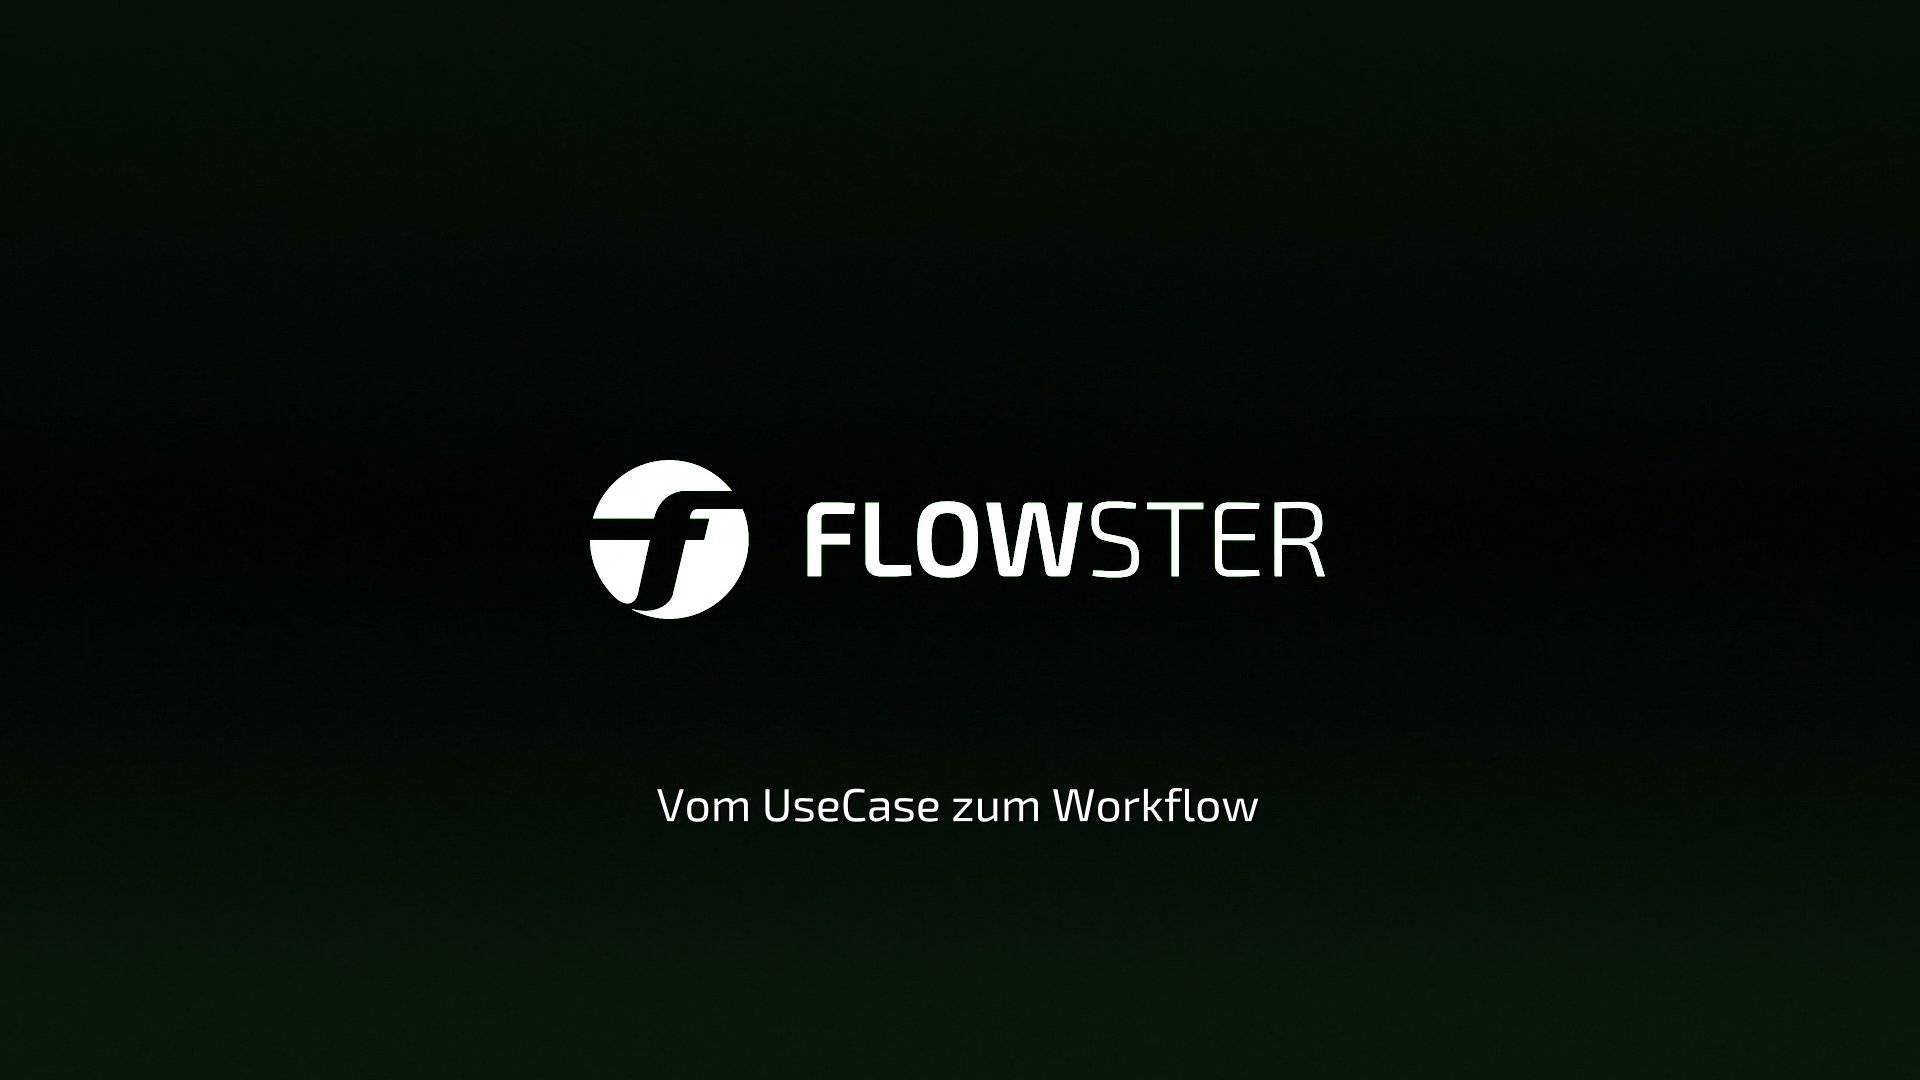 How To Video - Vom UseCase zum Workflow